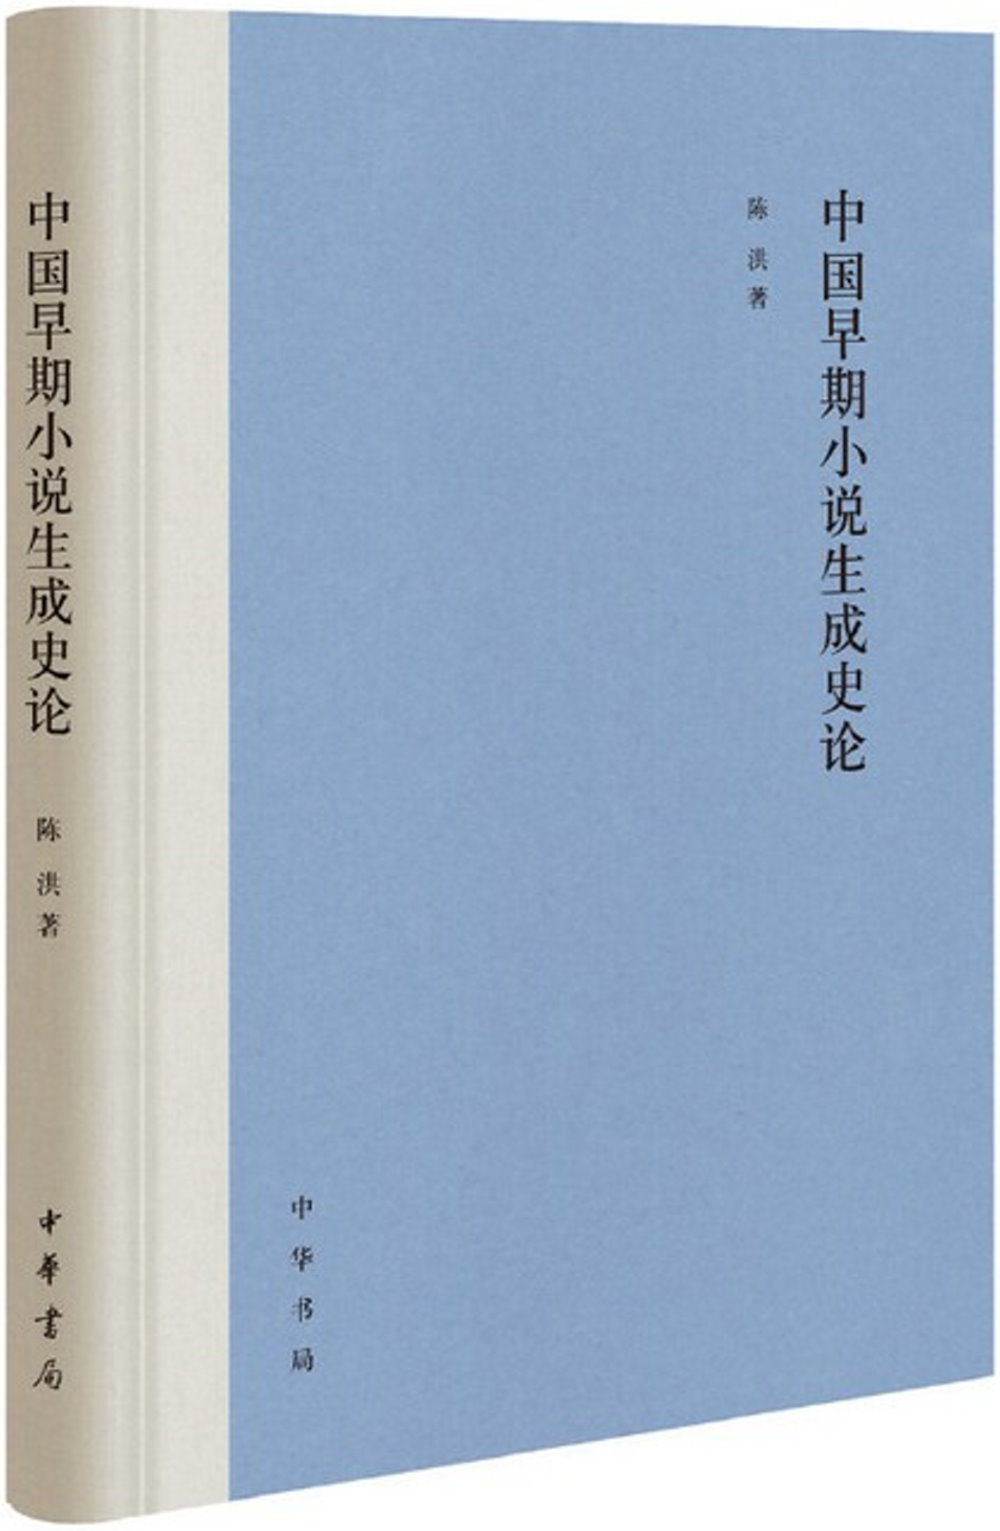 中國早期小說生成史論